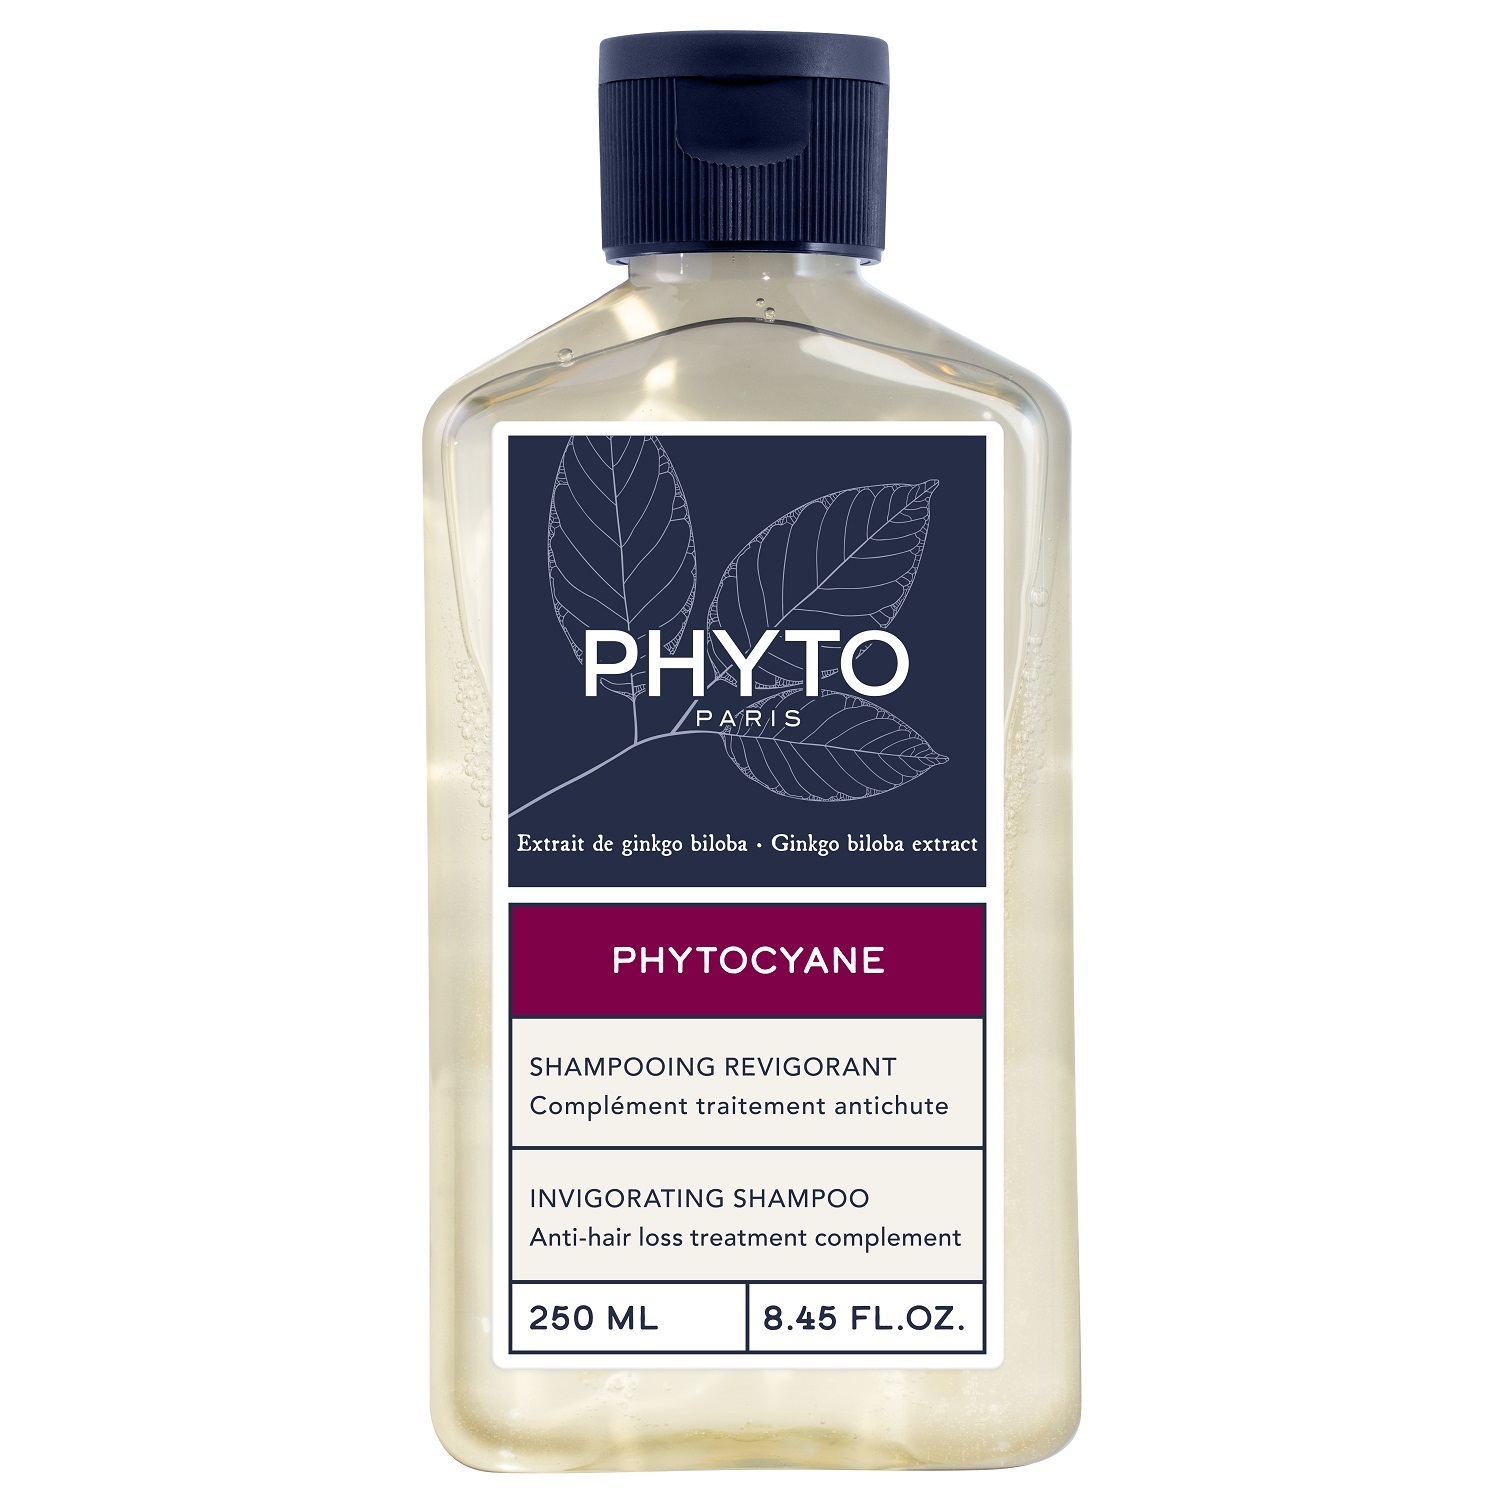 Phyto Укрепляющий шампунь для волос, 250 мл (Phyto, Phytocyane) цена и фото